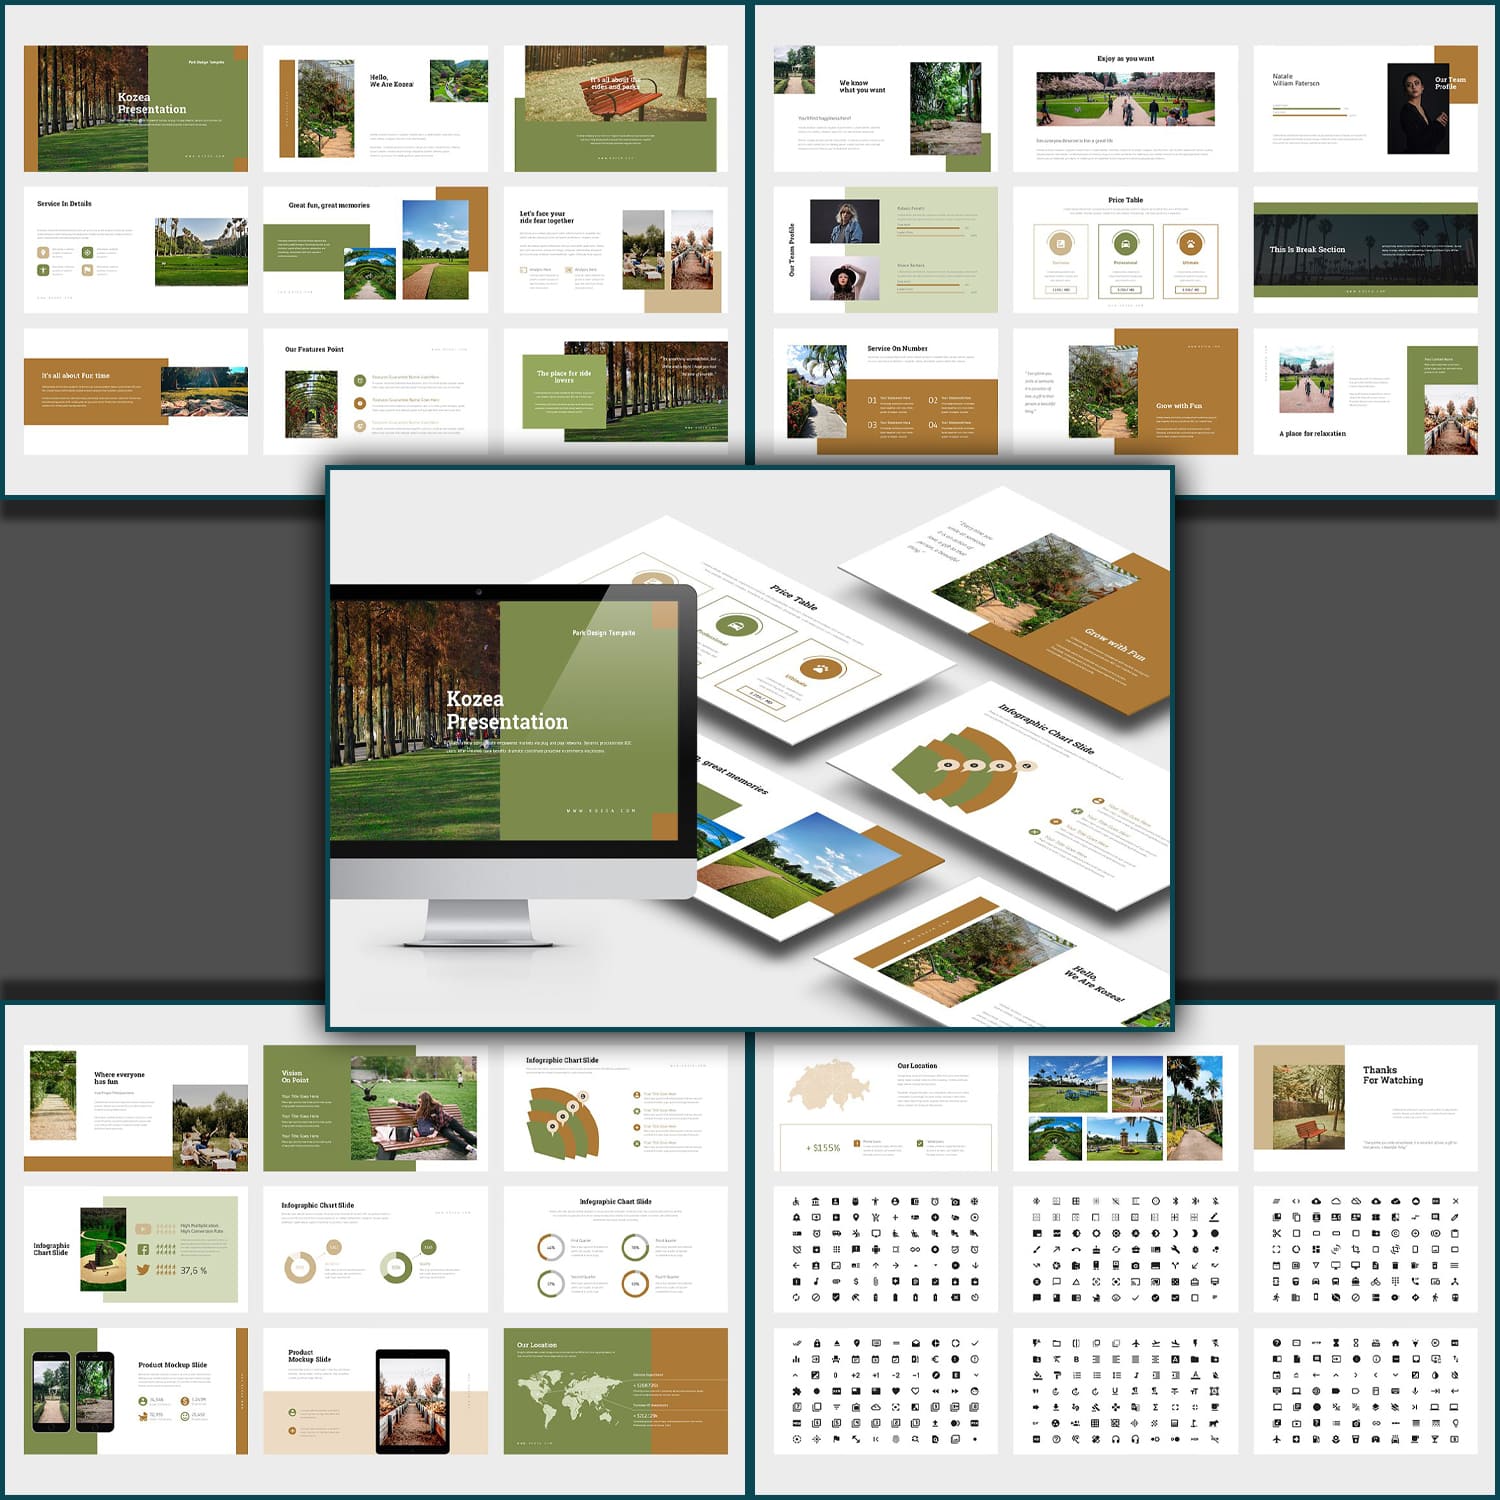 Kozea: Park & Landscape PowerPoint cover image.